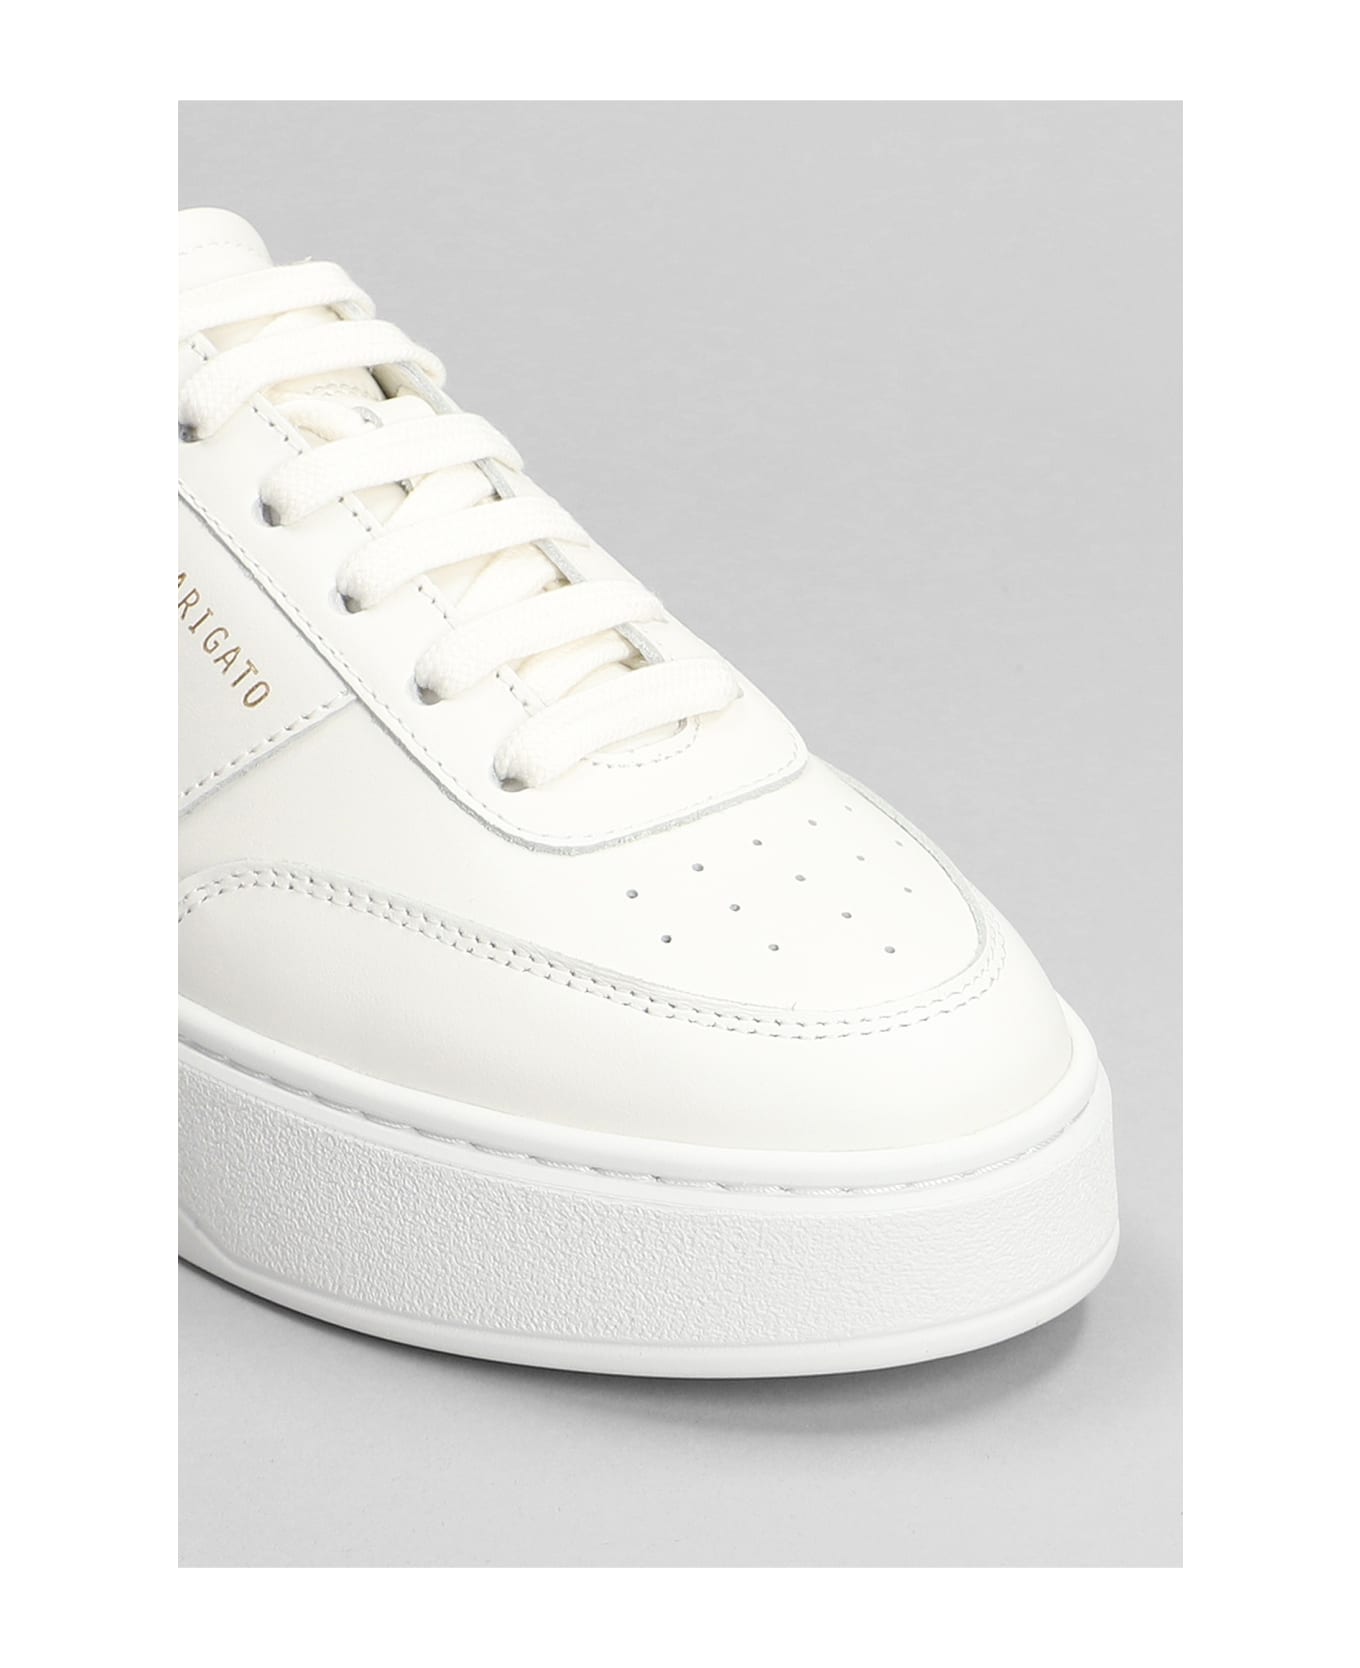 Axel Arigato Orbit Vintage Sneakers In White Leather - white